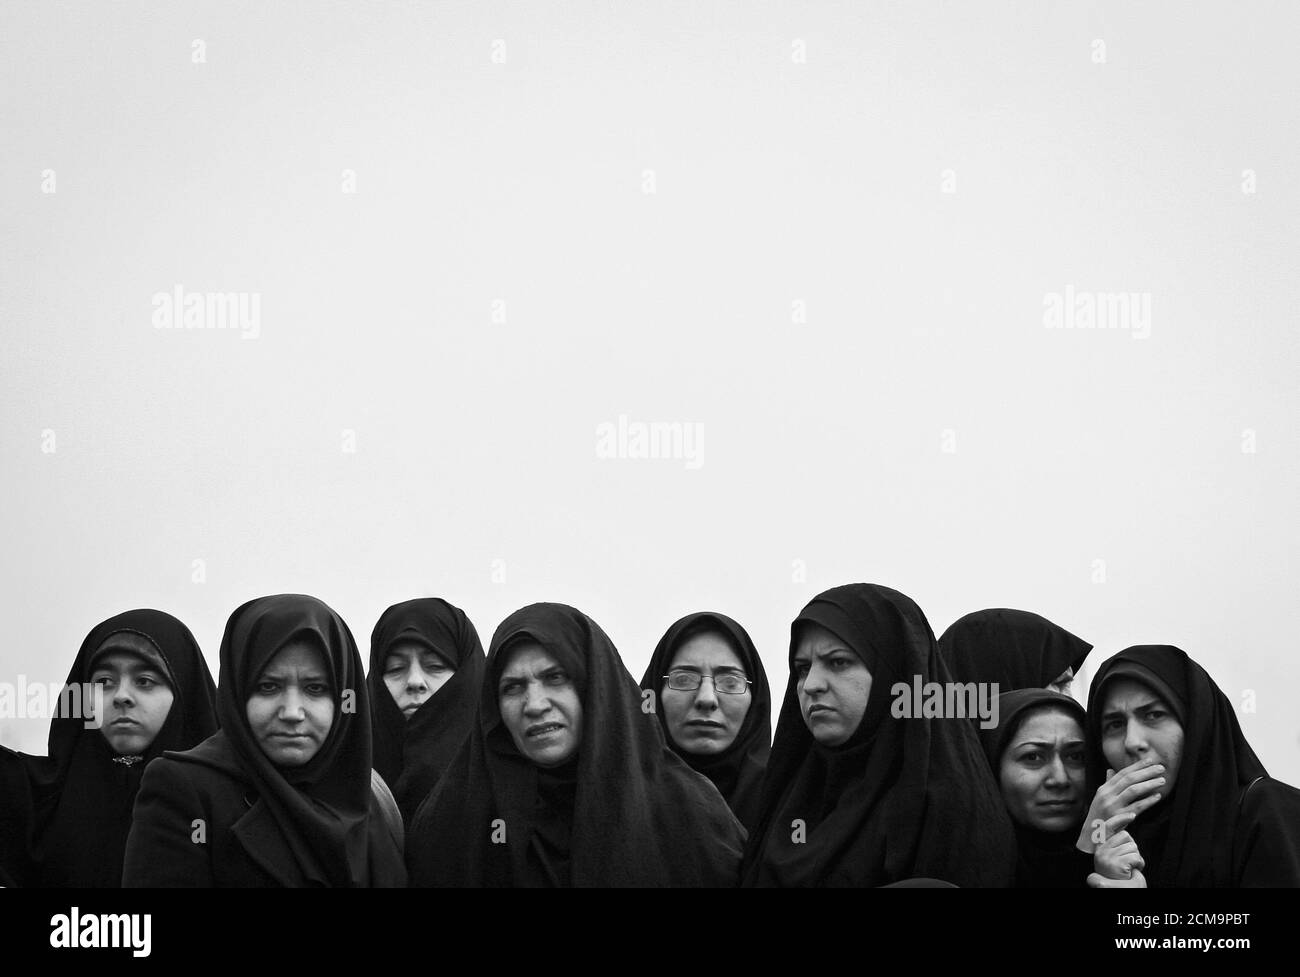 Teherán,Irán - Febrero 11,2008 : las mujeres en Irán tienen que usar la burqa.en Irán, las mujeres típicamente visten de negro.las mujeres iraníes tienen que usar burqas turísticas Foto de stock